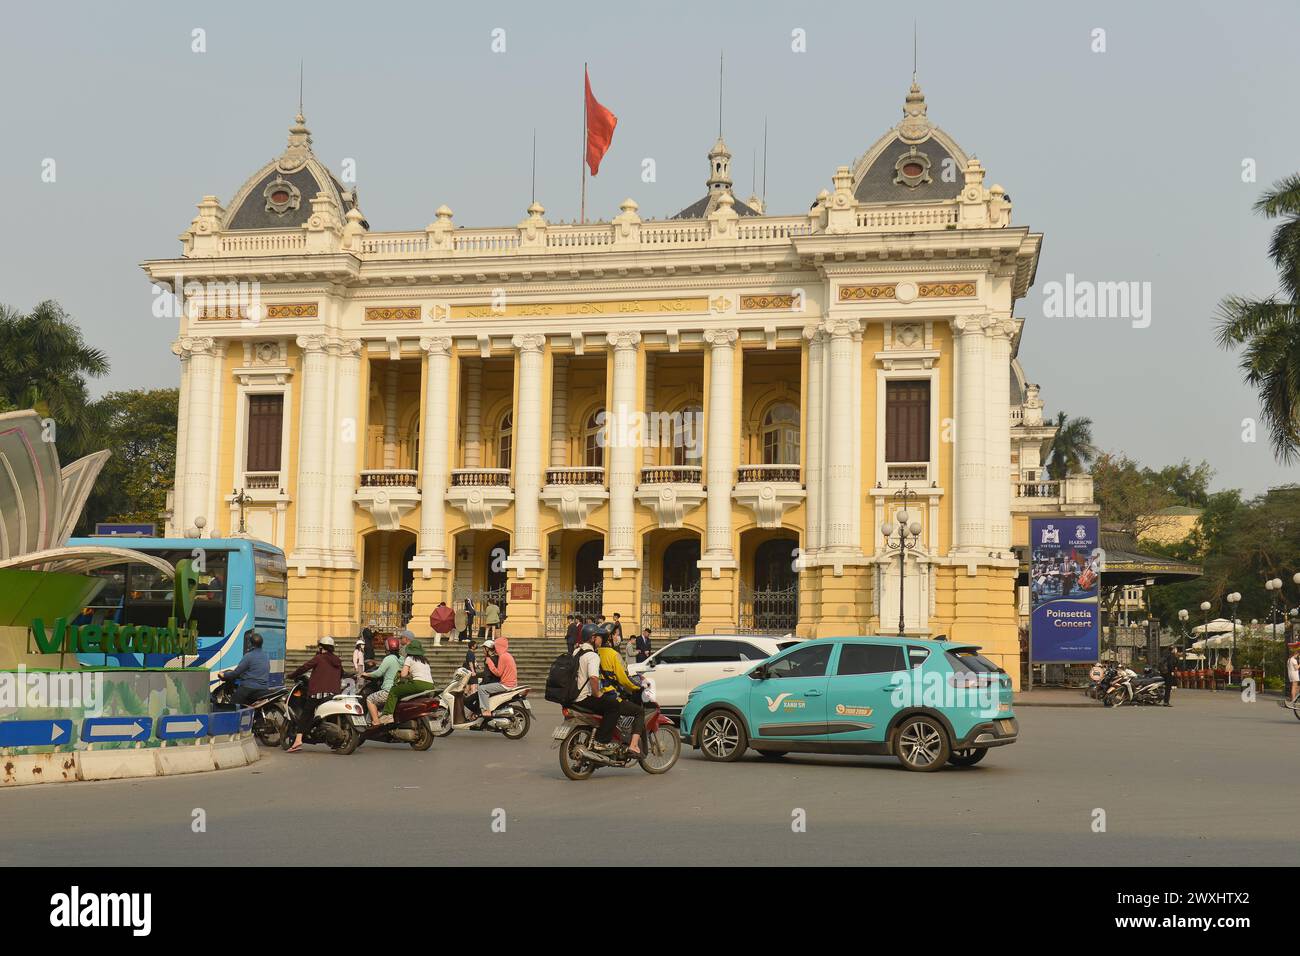 Vinfast electric taxis appear throughout major cities in Vietnam. Los taxis eléctricos Vinfast aparecen en las principales ciudades de Vietnam Stock Photo